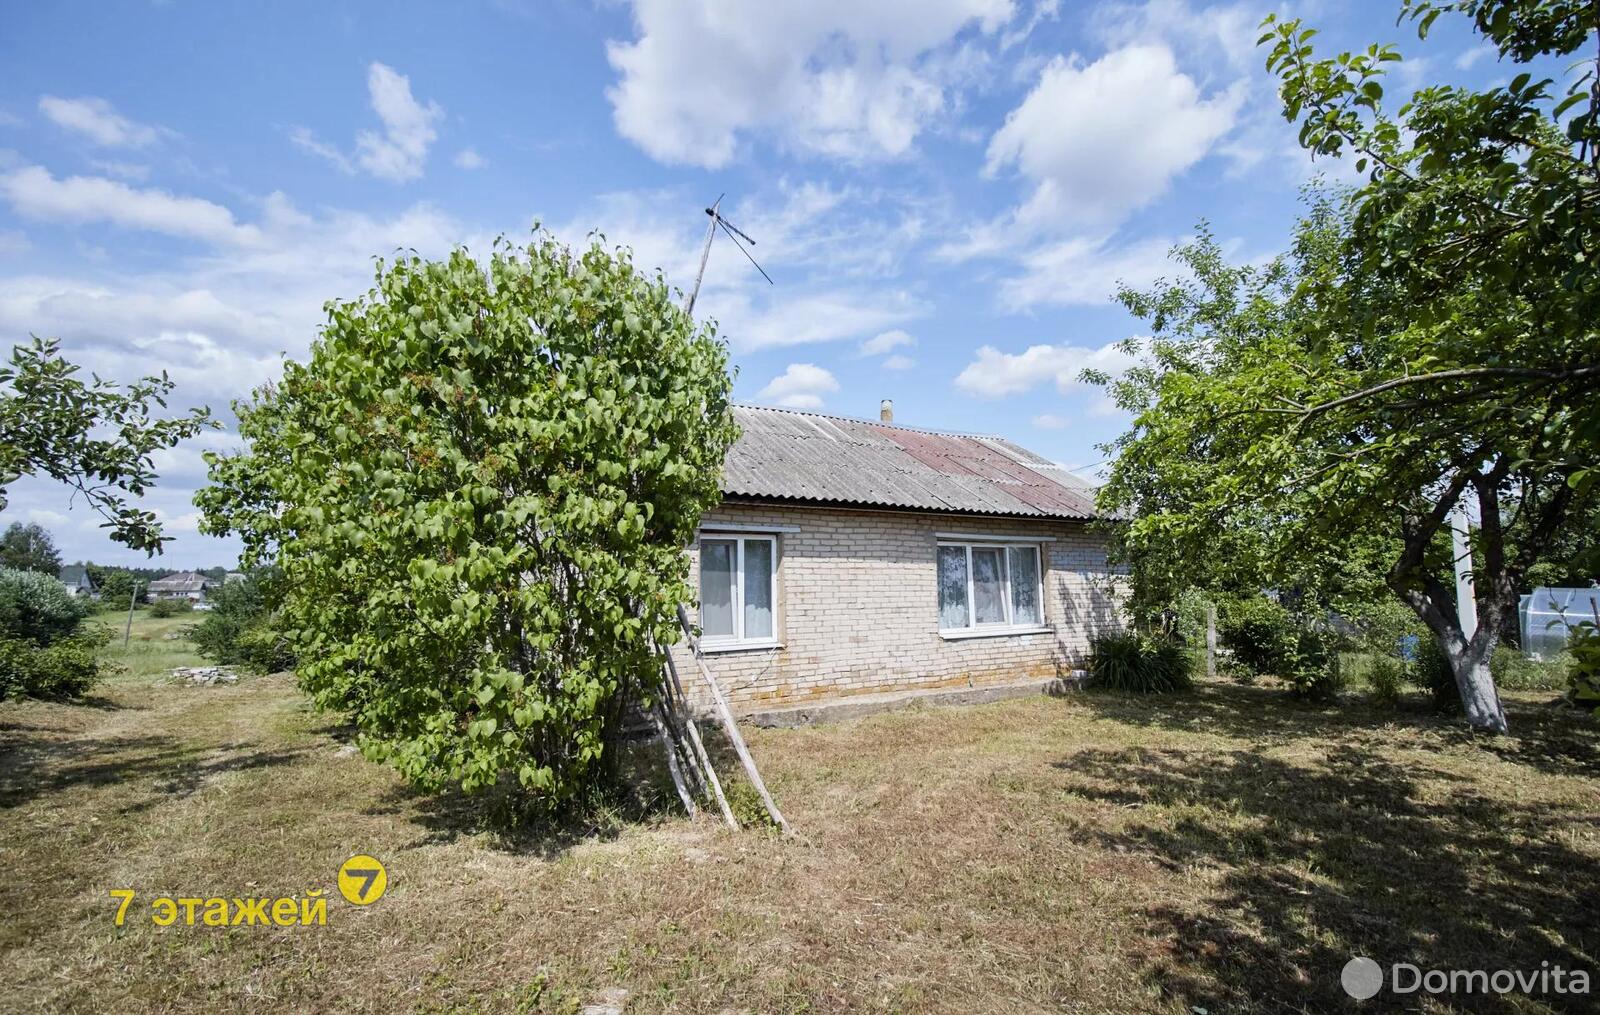 дом, Тресковщина, ул. Подгорная, стоимость продажи 104 989 р.